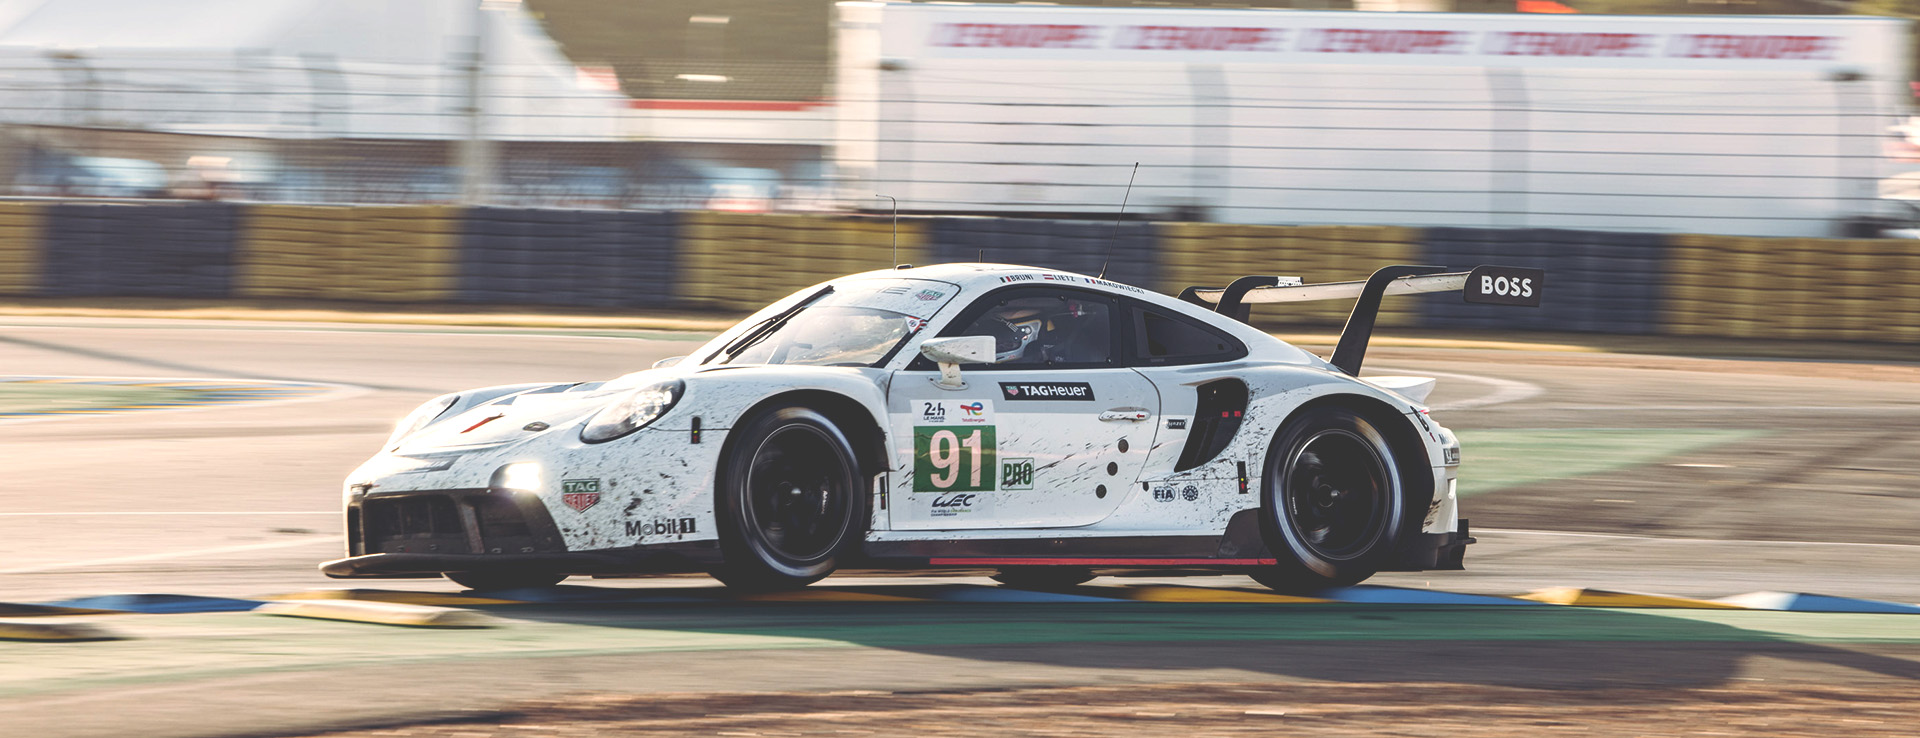 2022 24 Hours of Le Mans Porsche 911 RSR racecar